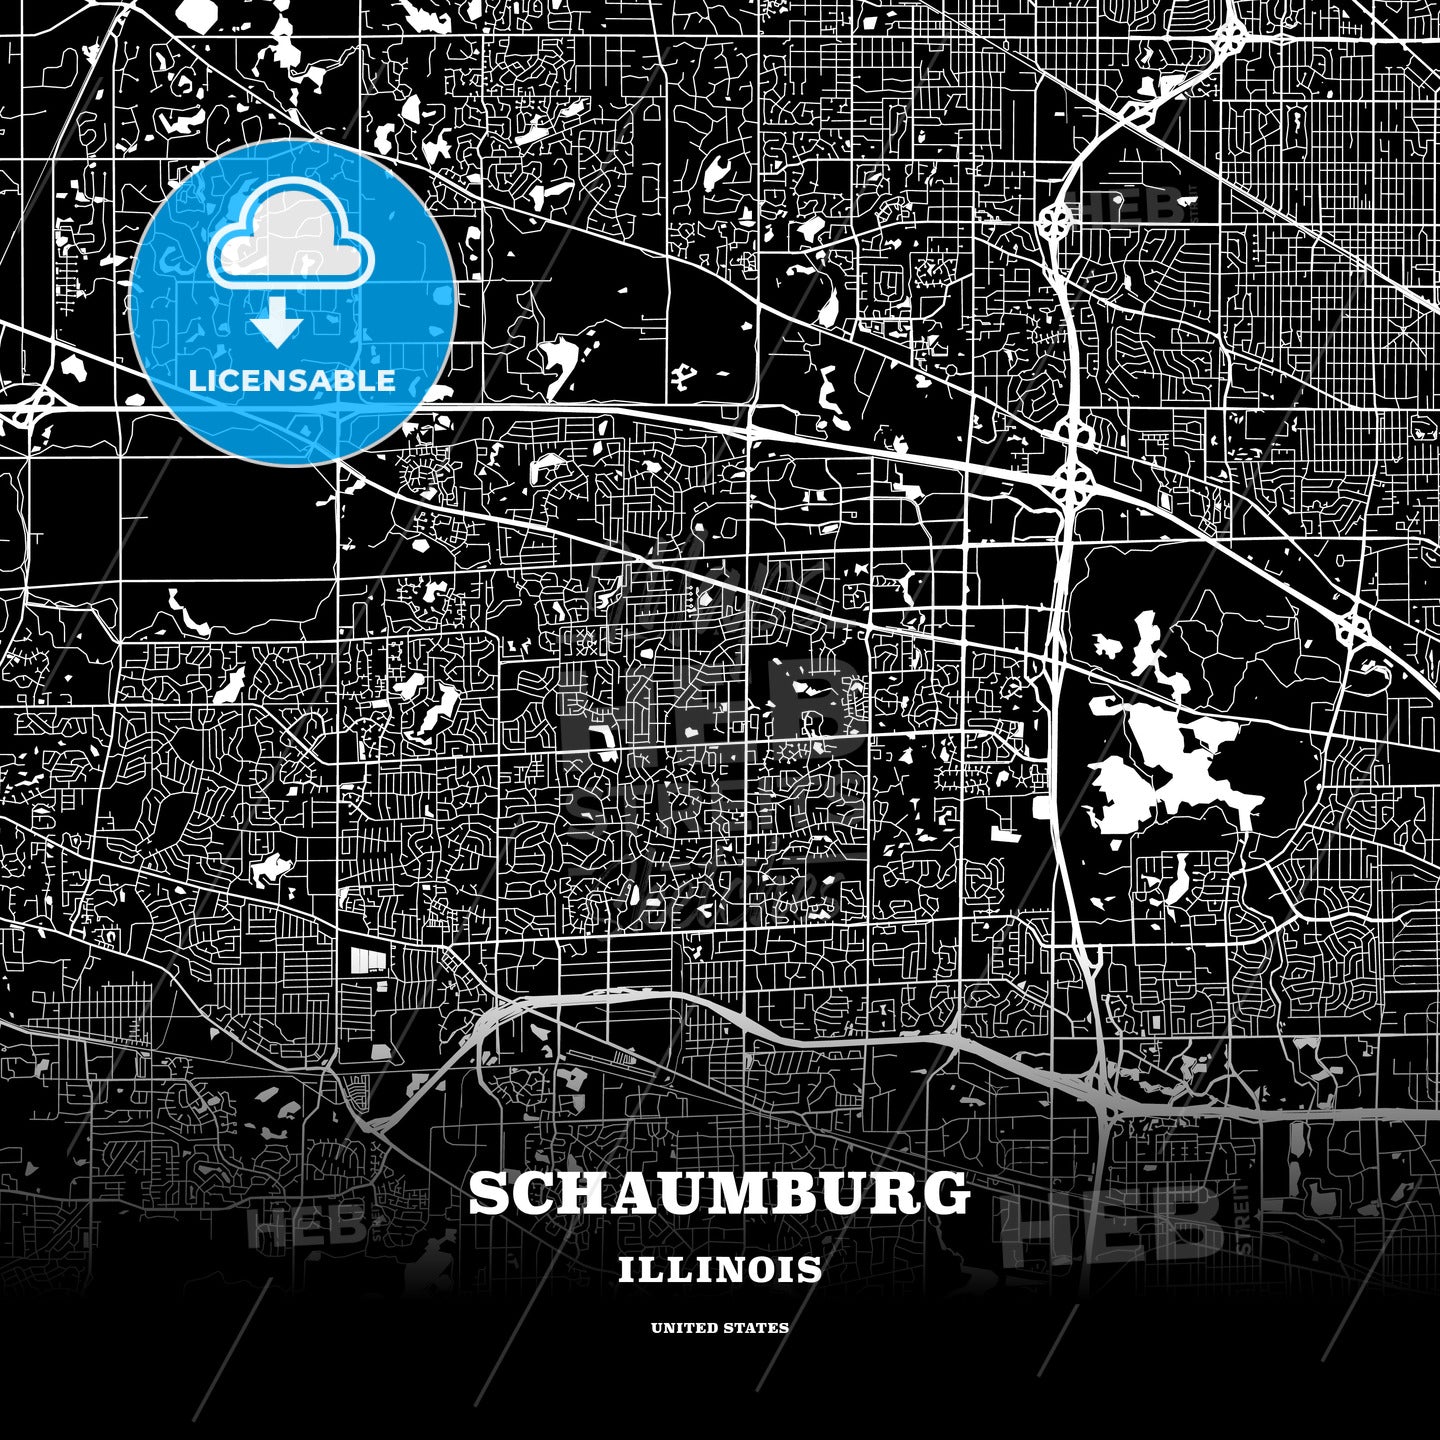 Schaumburg, Illinois, USA map